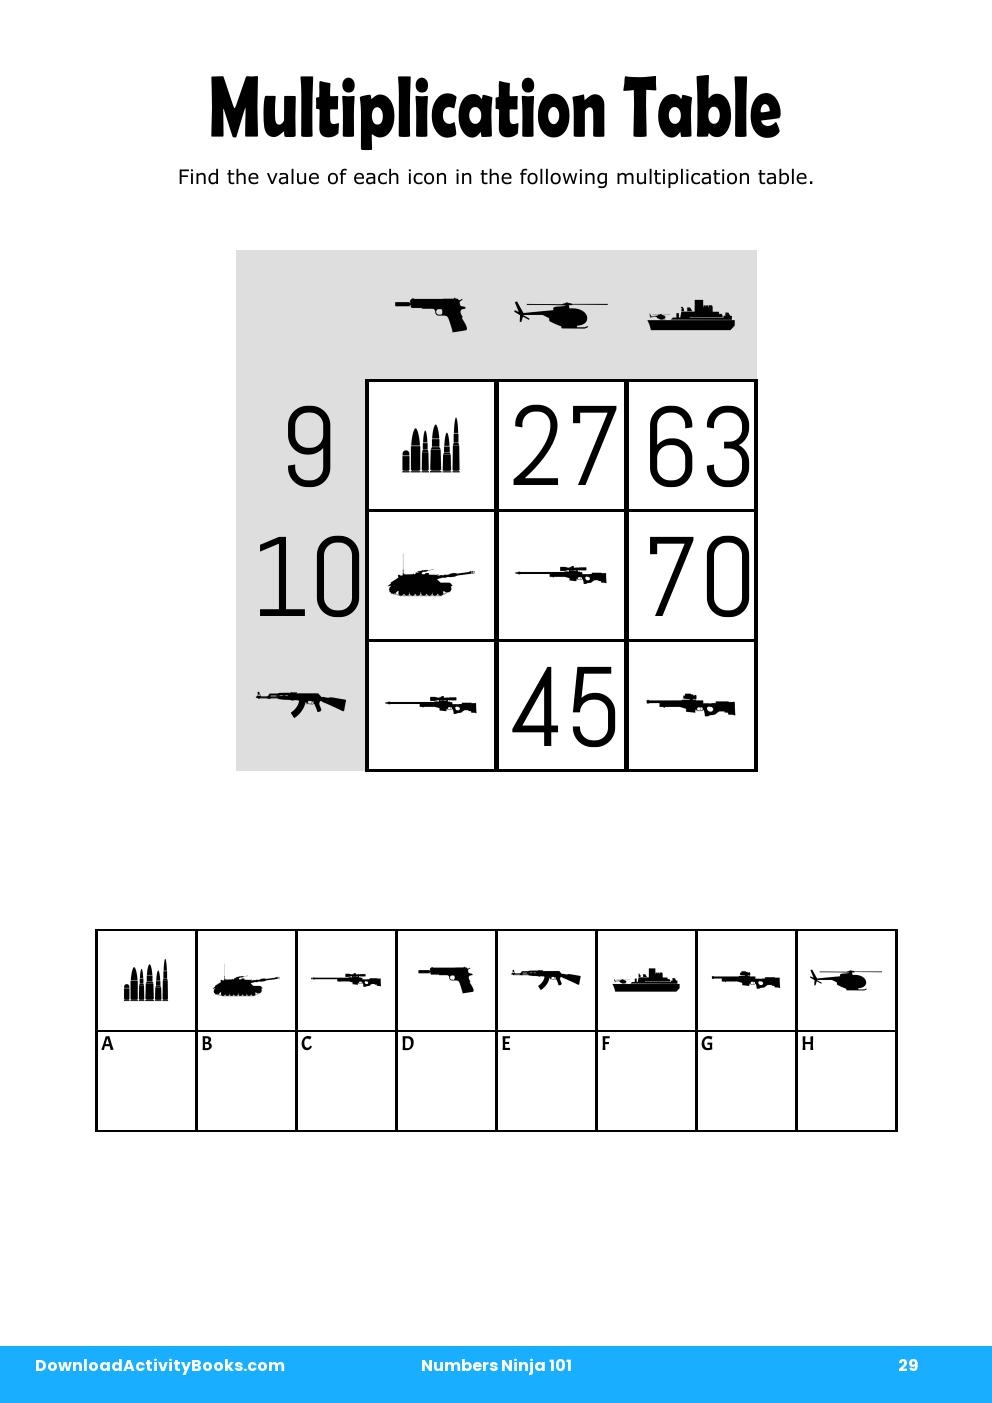 Multiplication Table in Numbers Ninja 101